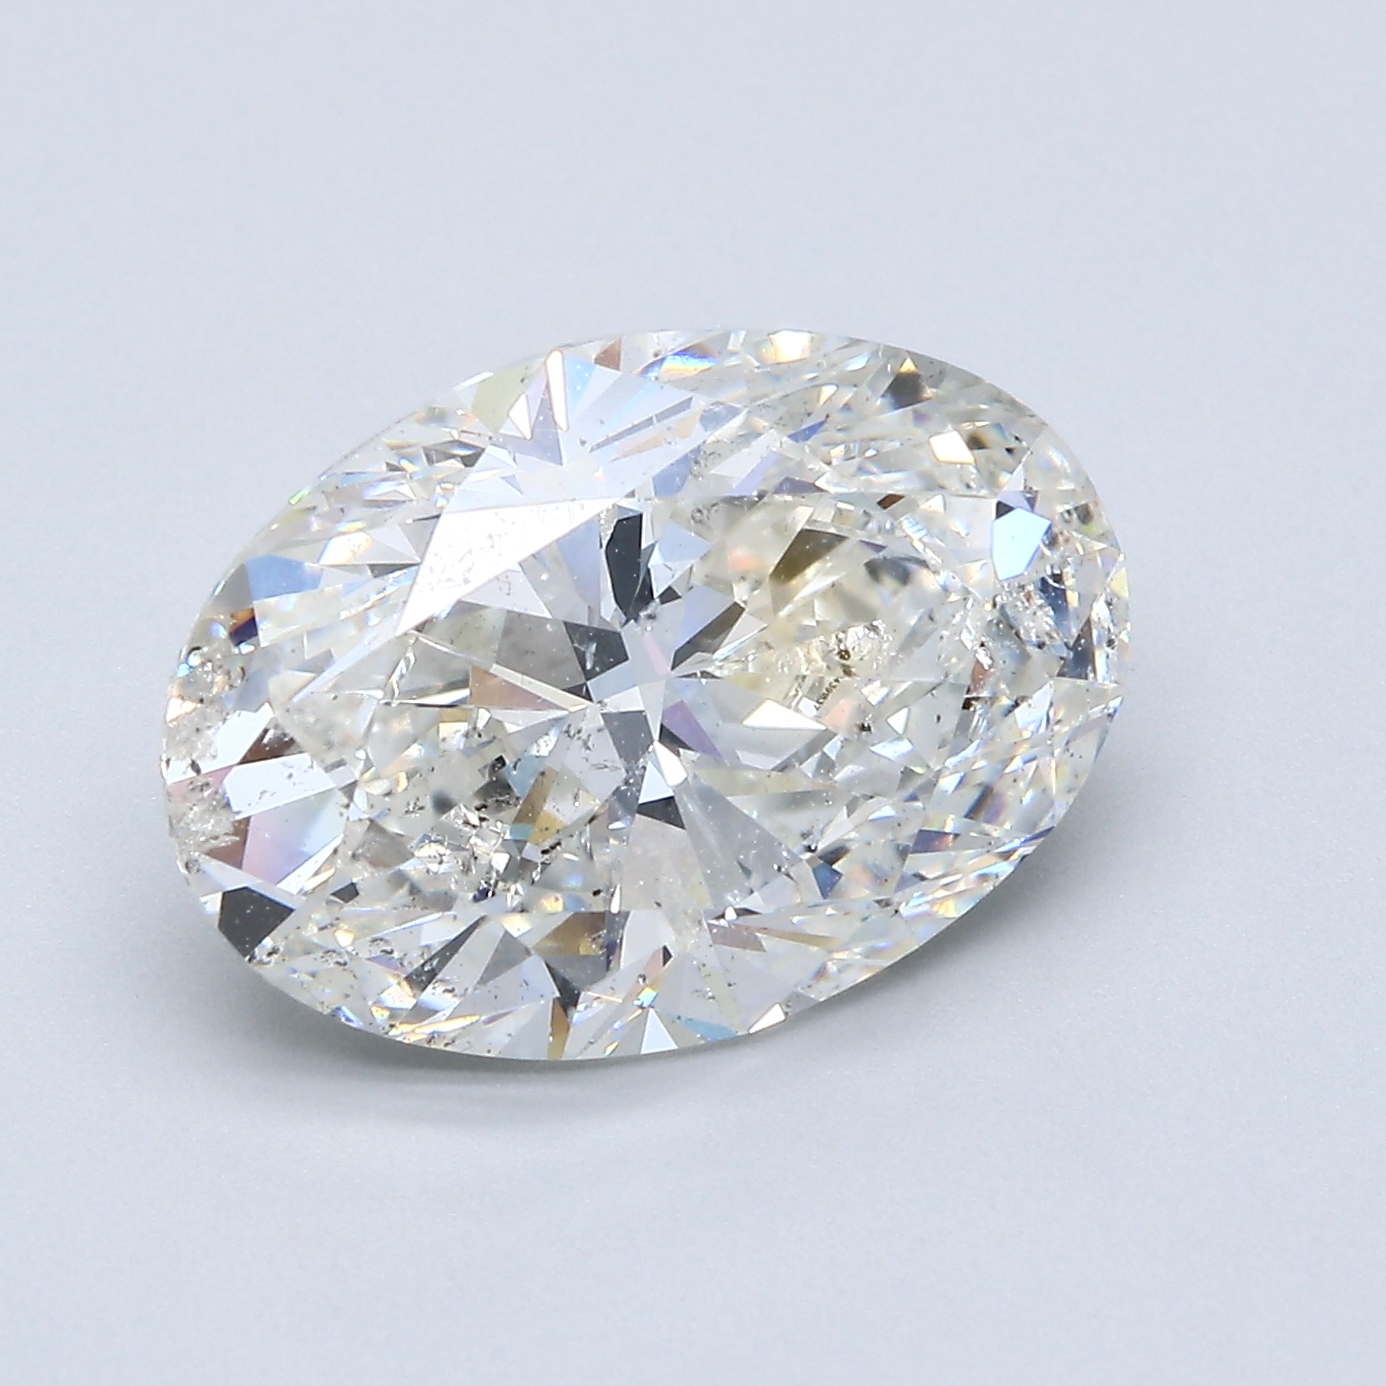 6.05 Carat Oval Cut Natural Diamond